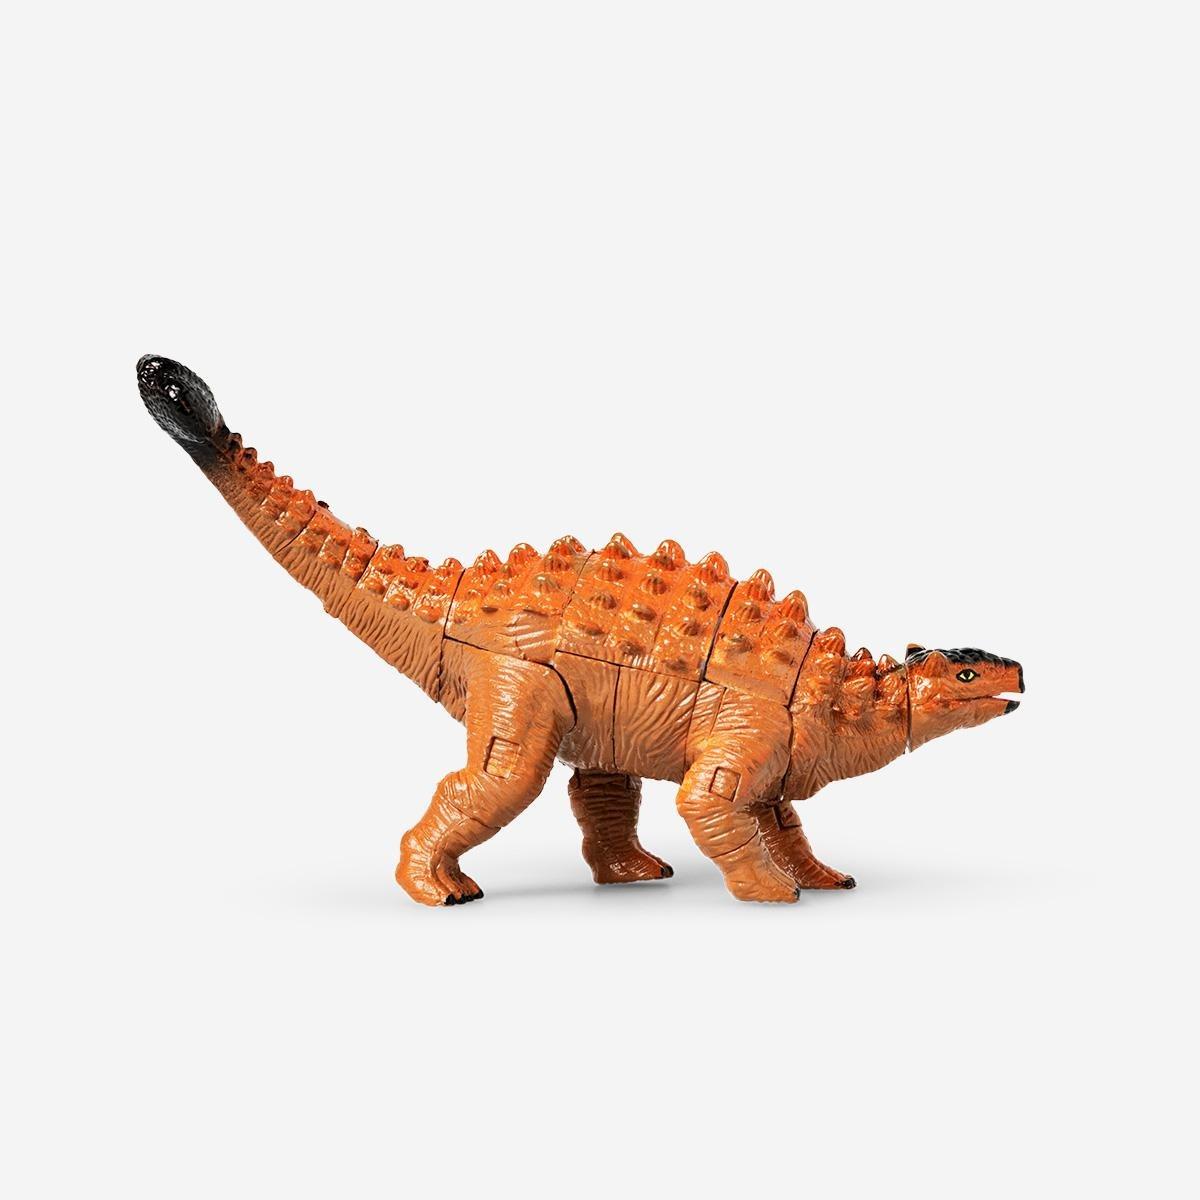 Orange ankylosaurus dinosaur